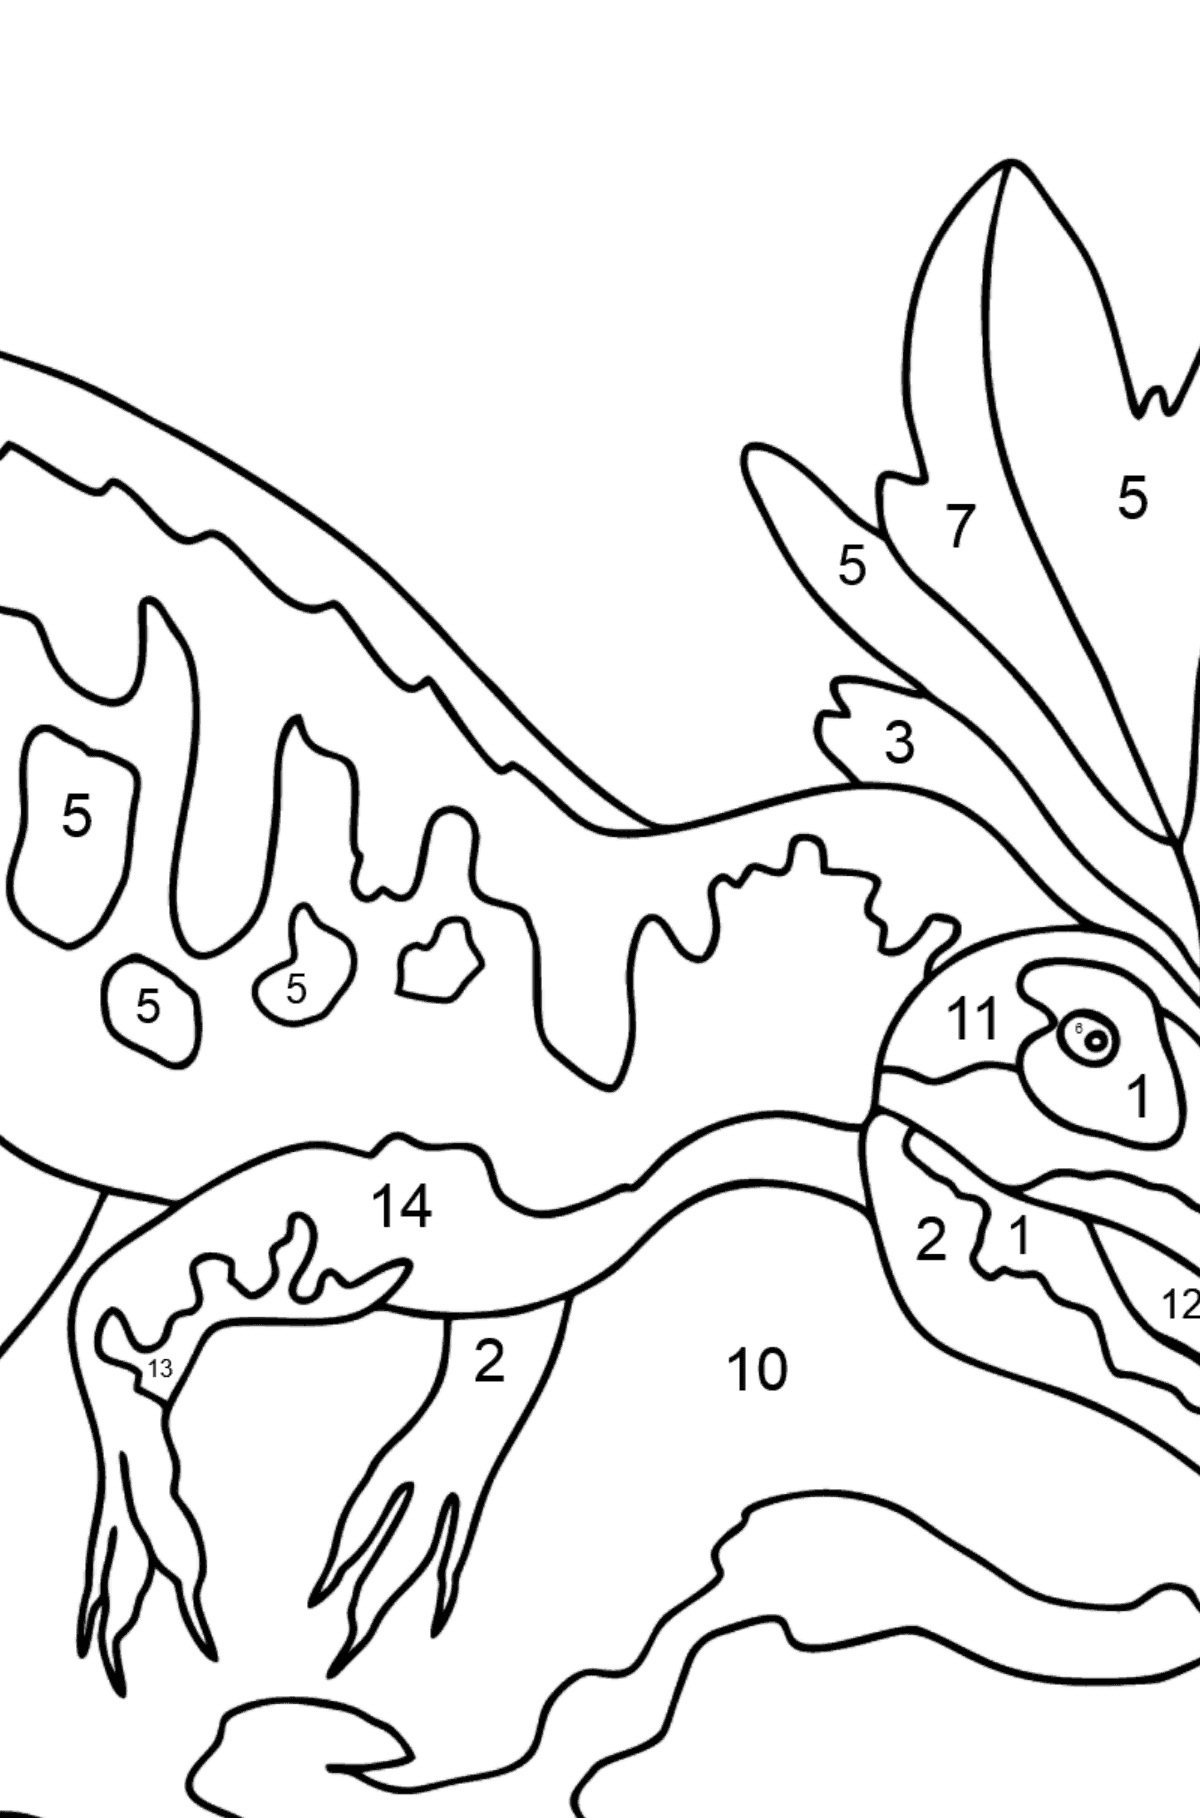 Dibujo para colorear de alosaurio (difícil) - Colorear por Números para Niños